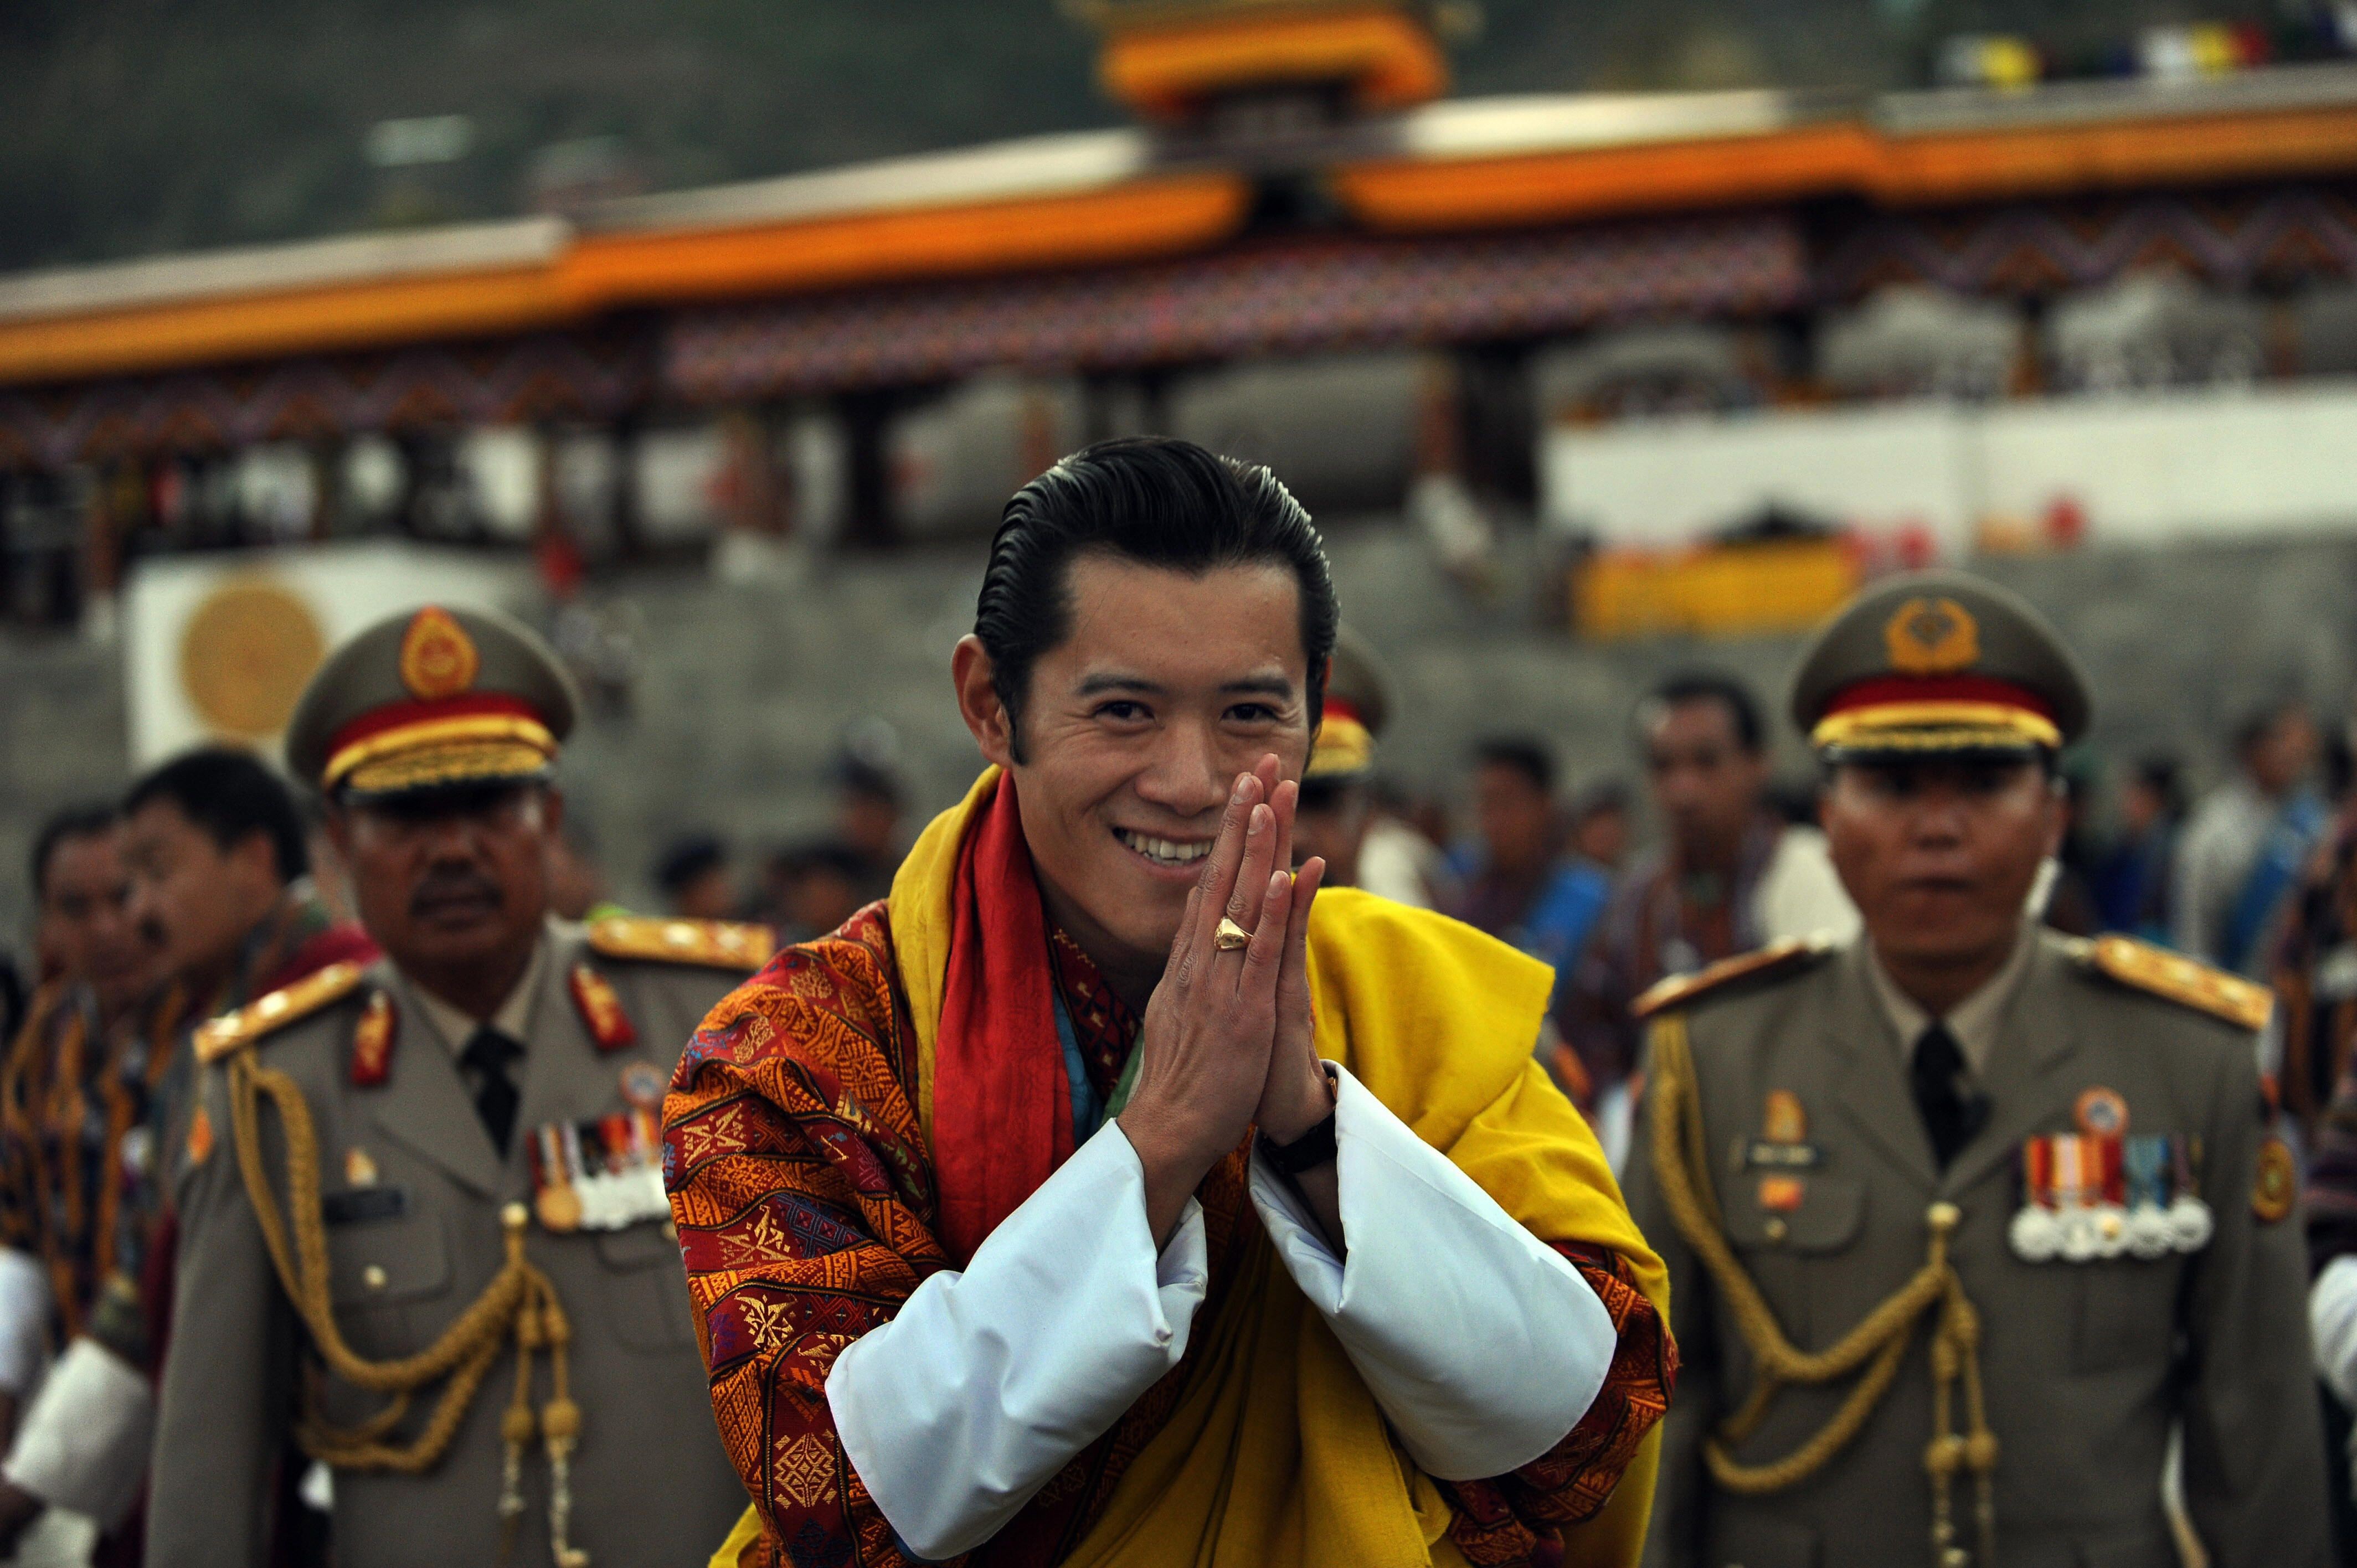 笑顔のおすそ分け 幸せの国 ブータン国王家族が素敵 Cosmopolitan